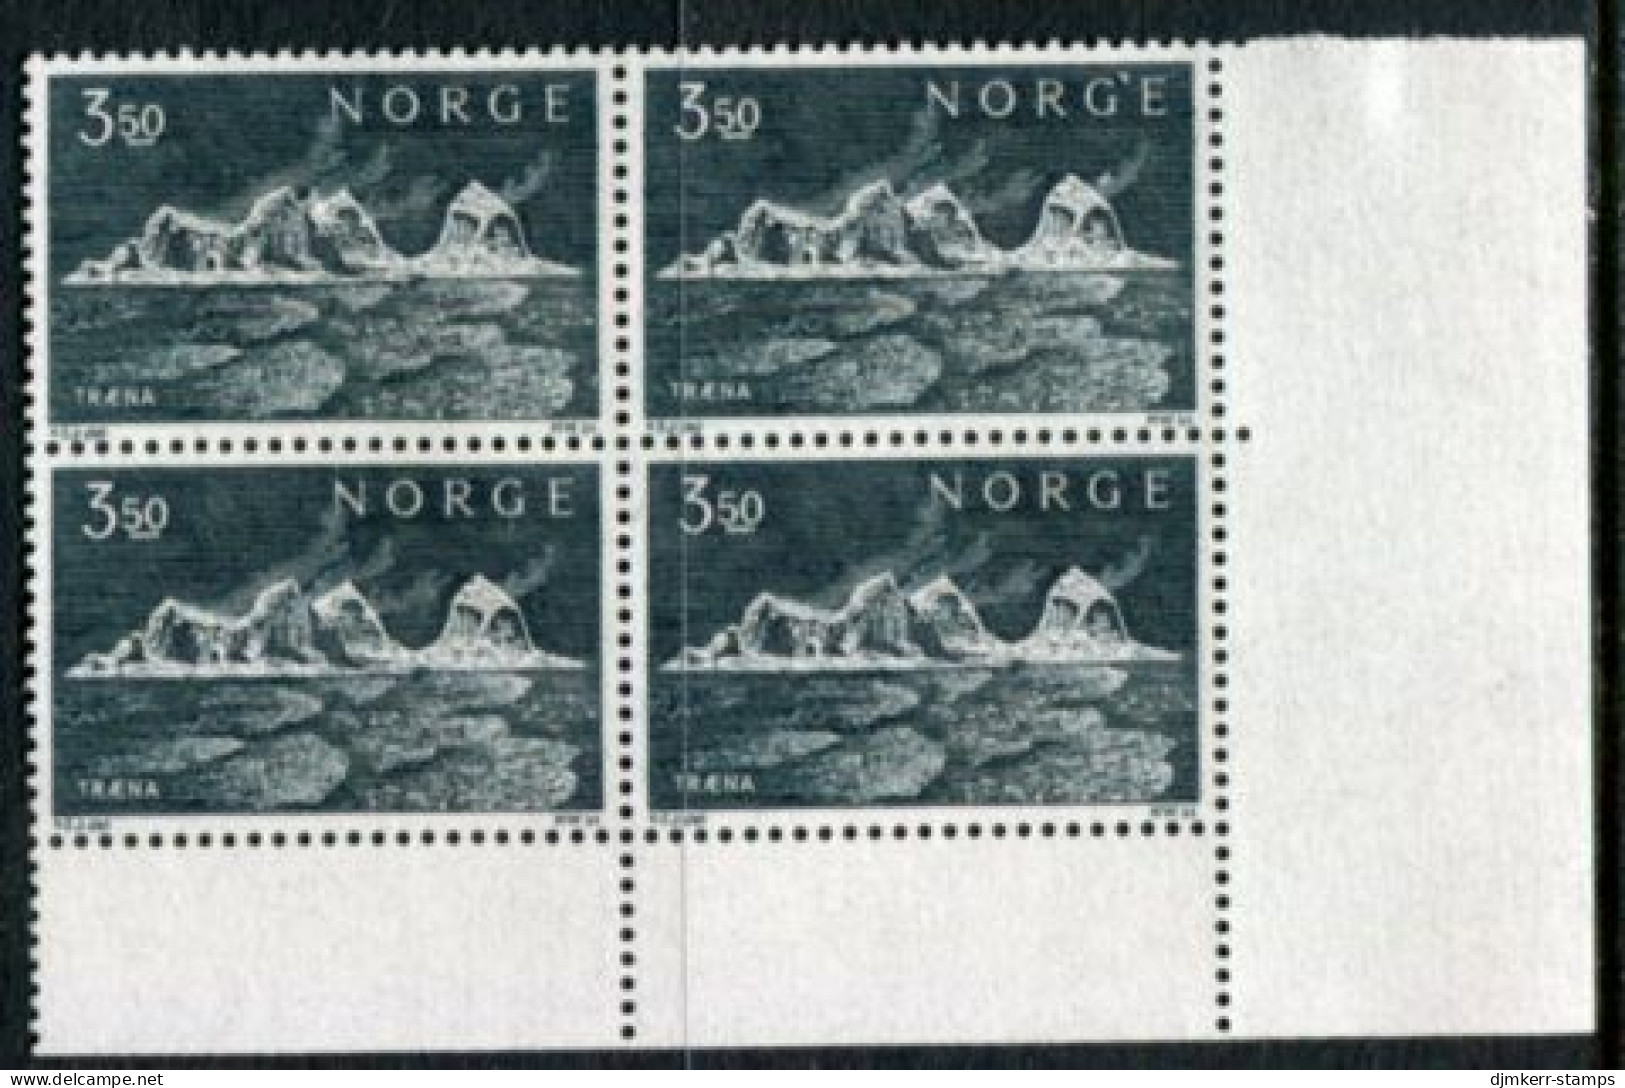 NORWAY 1969 Traena Islands Block Of 4 MNH / **.  Michel 587 - Ungebraucht